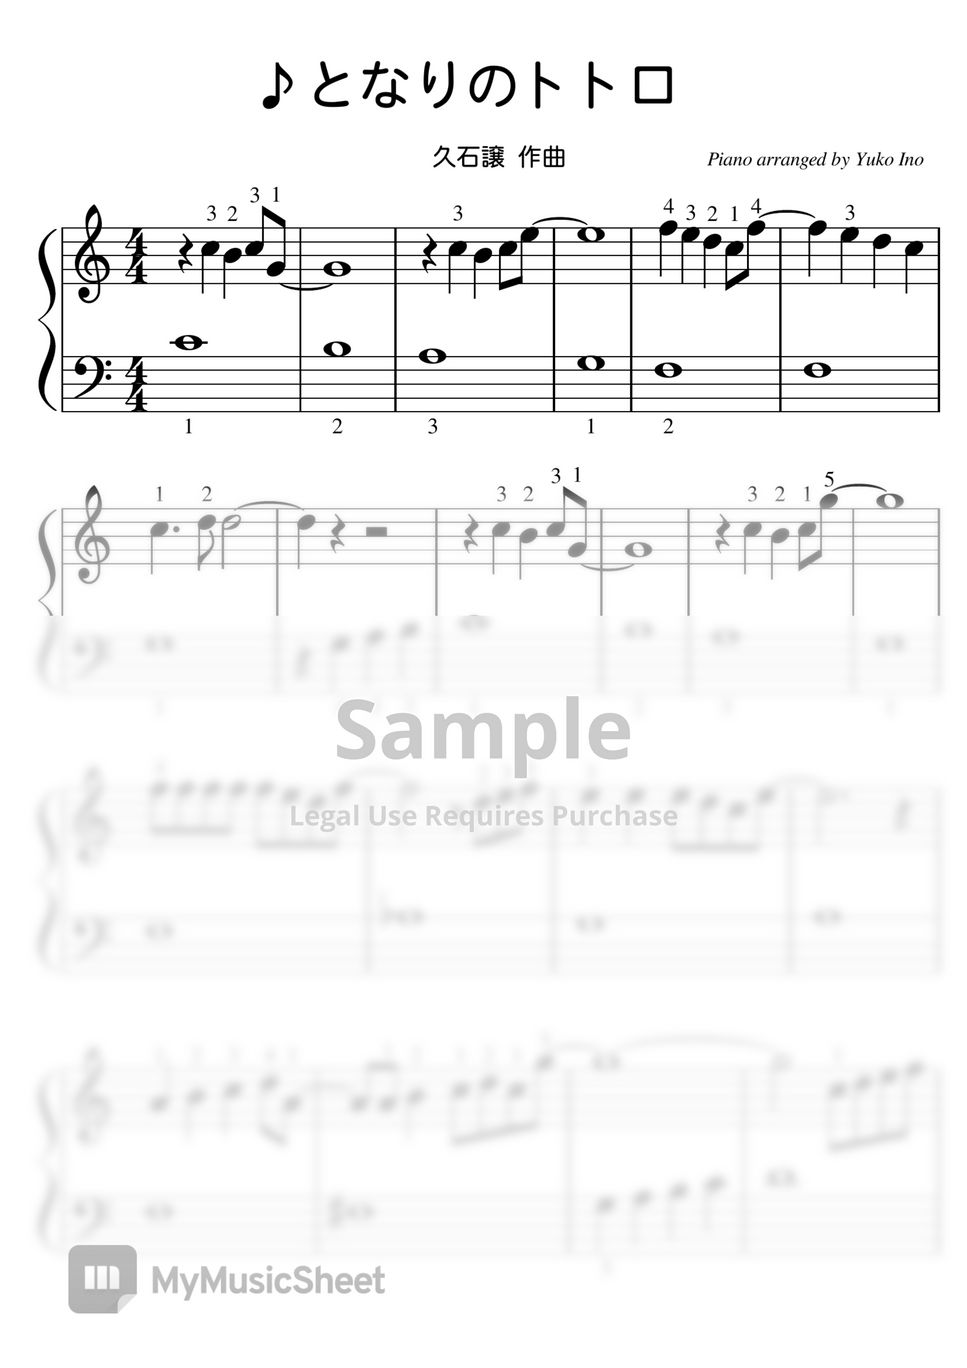 久石譲 - 【Easy】My Neighbor Totoro (となりのトトロ,スタジオジブリ) by ピアノのせんせいの楽譜集